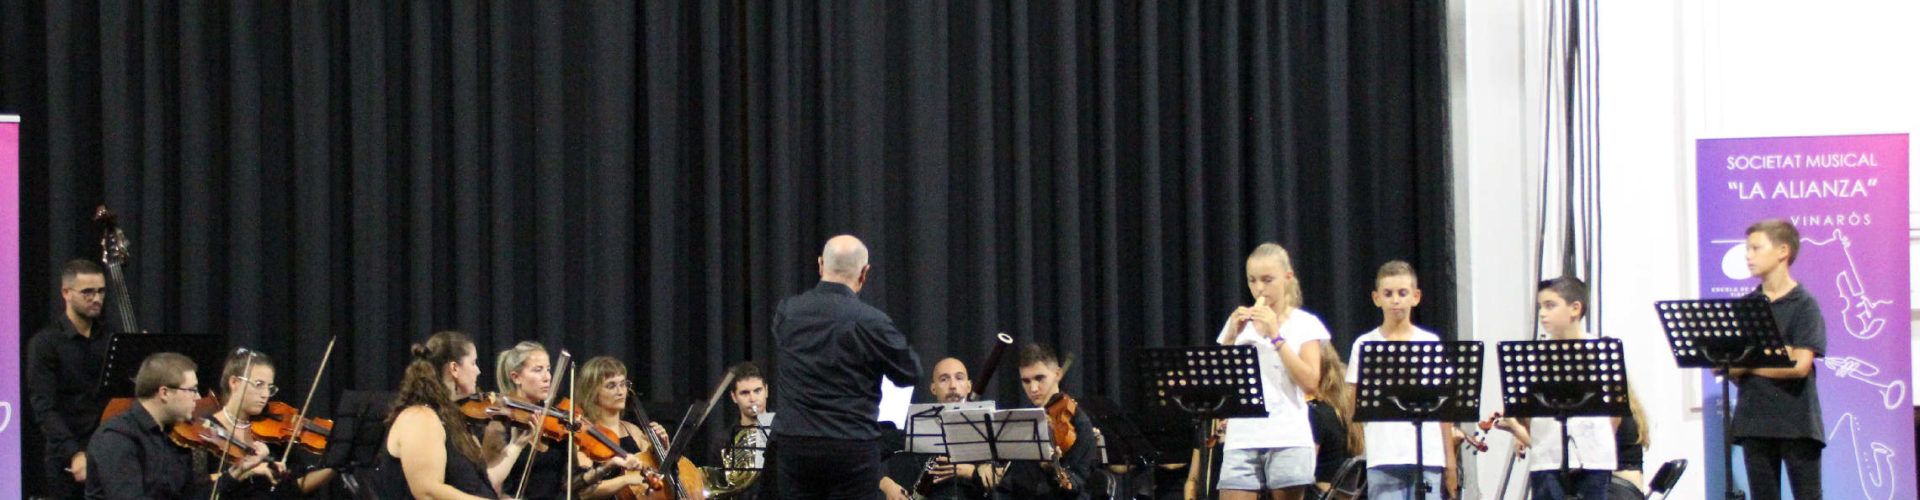 Entrega de diplomas y concierto de la Jove Orquestra como inicio del curso en La Alianza